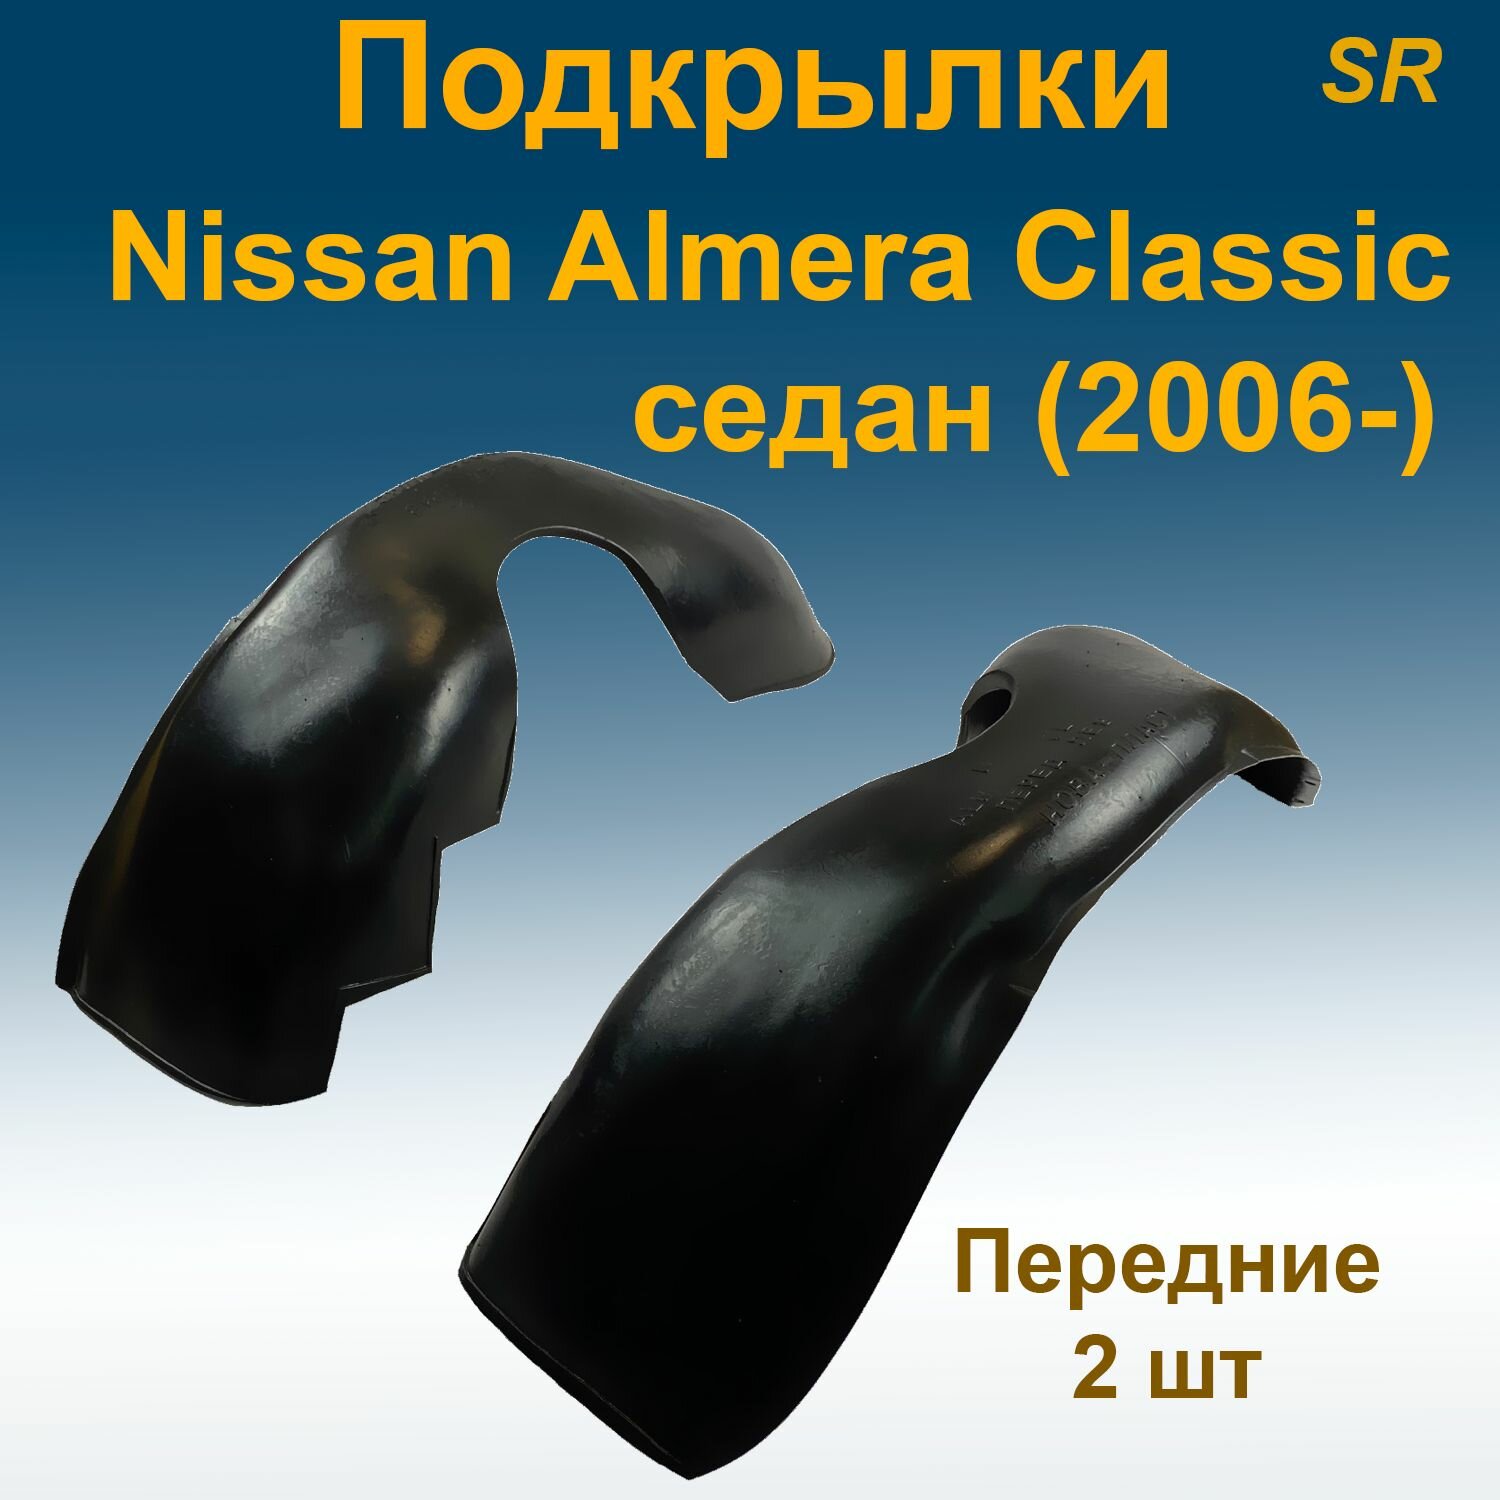 Подкрылки передние для Nissan Almera Classic SD седан (2006-) 2 шт